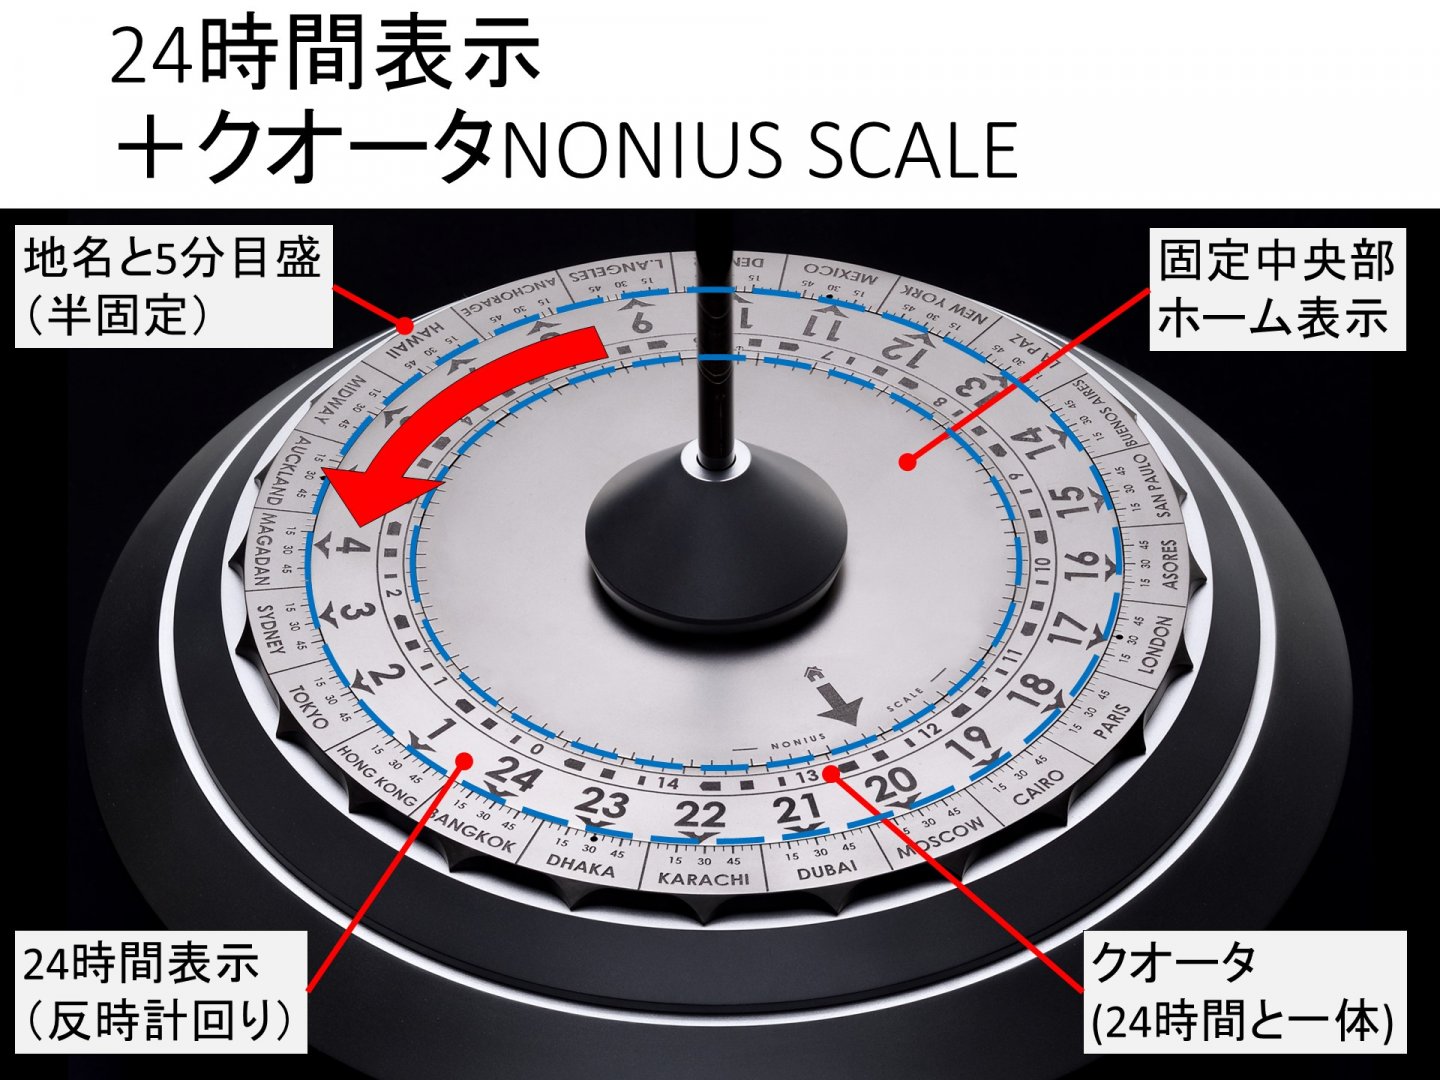 アントン・スハノフ ロータス 差動装置(Nonius Scale)によるクオータ(15分)以下の時刻表示を理解する